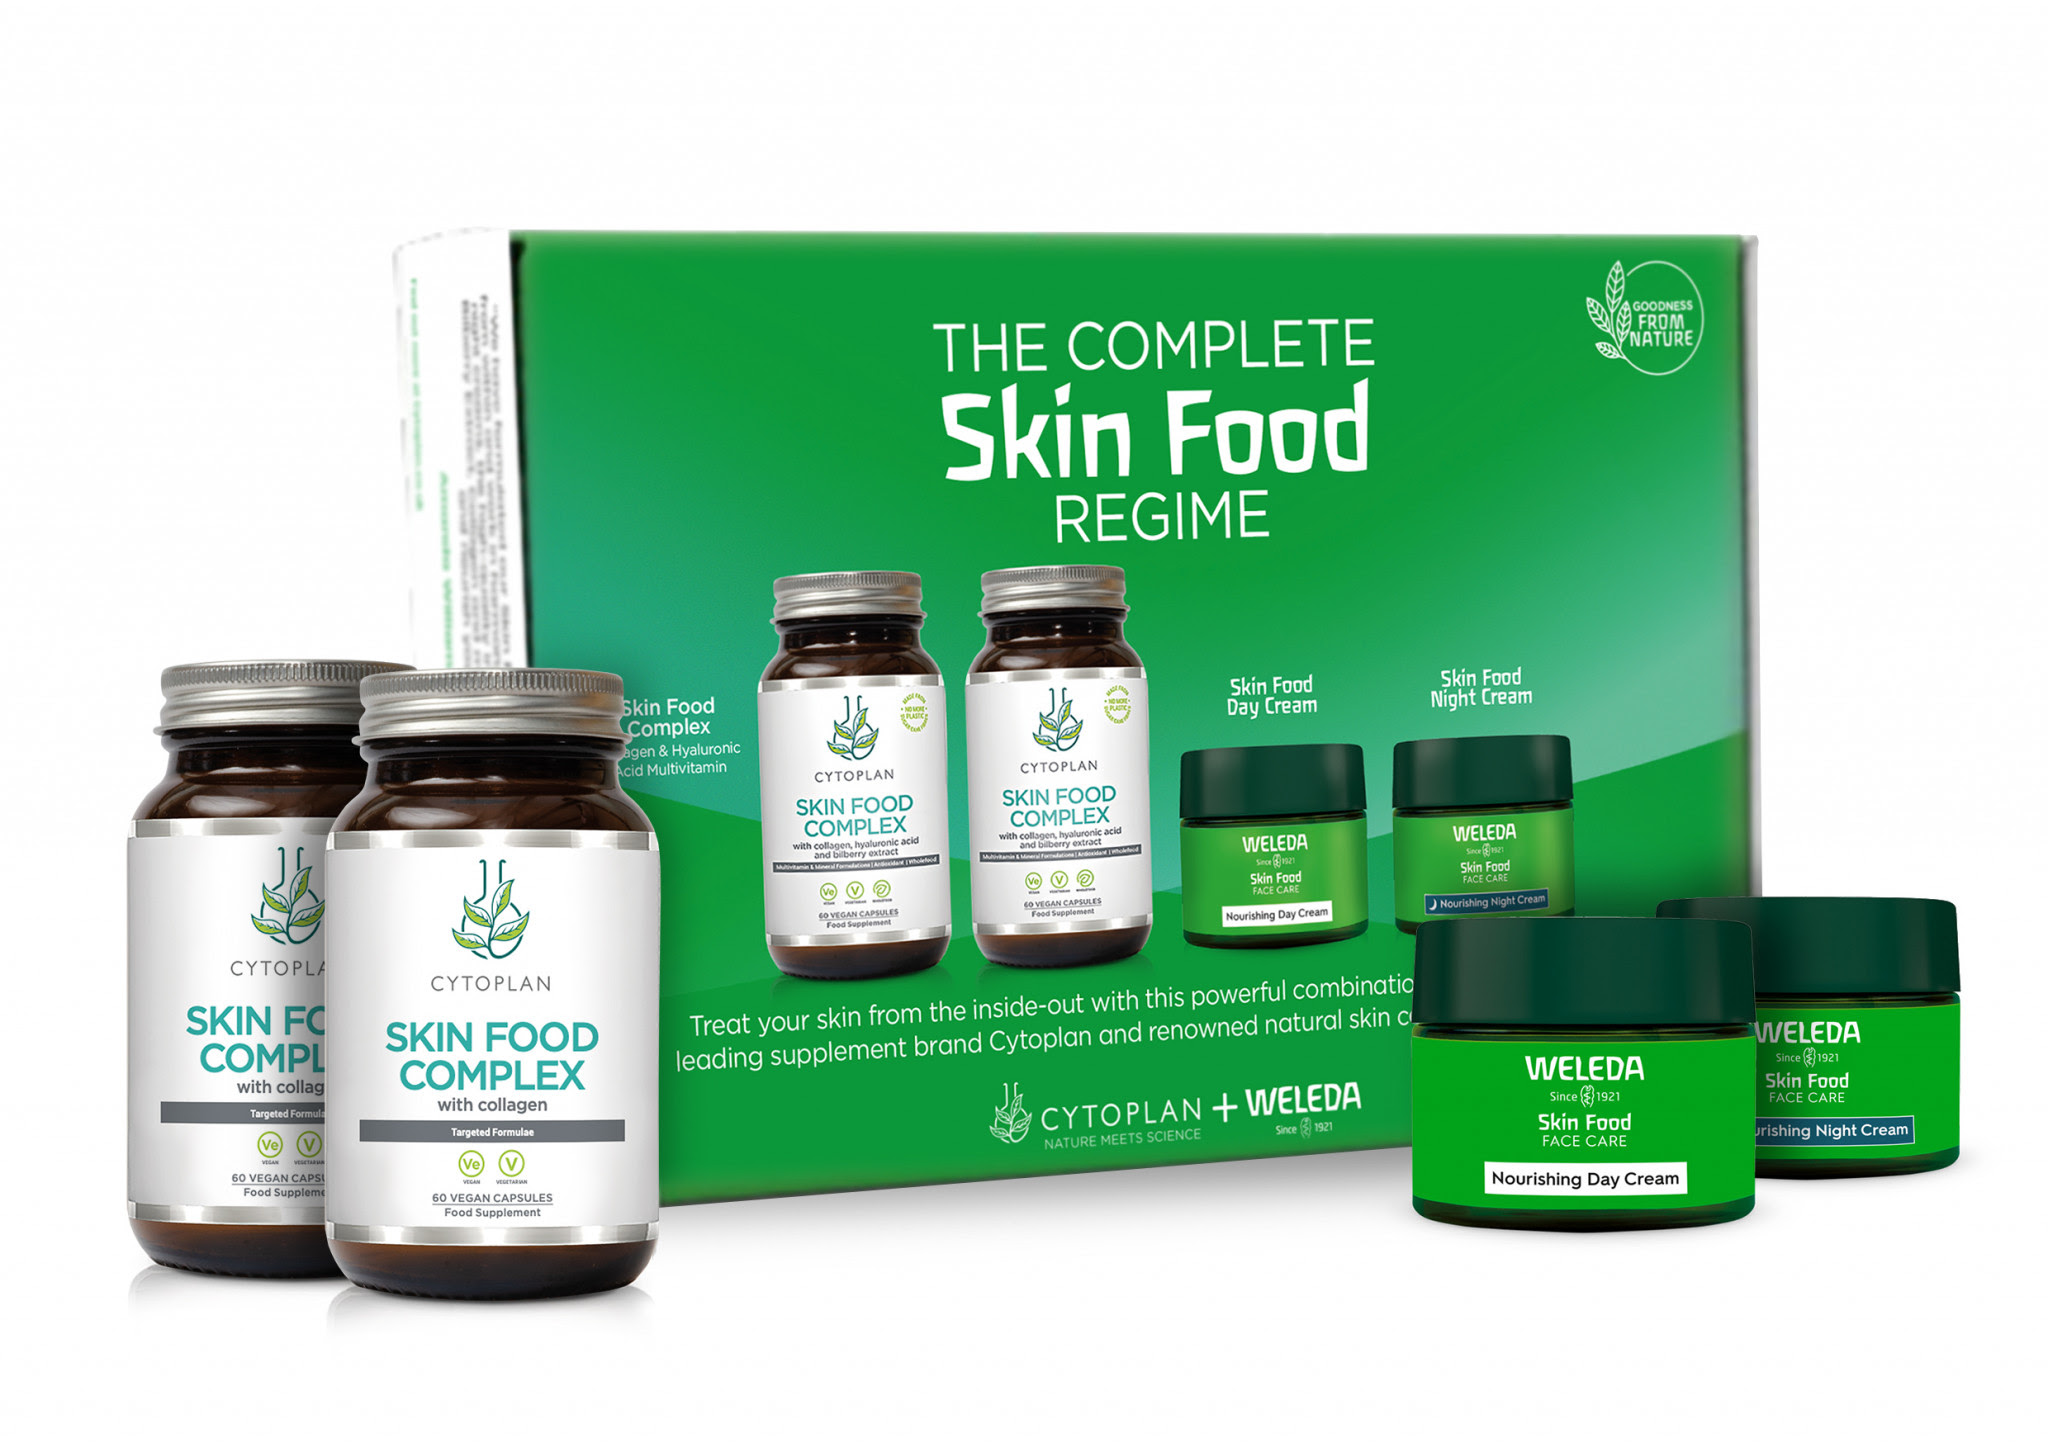 The Complete Skin Food Regime